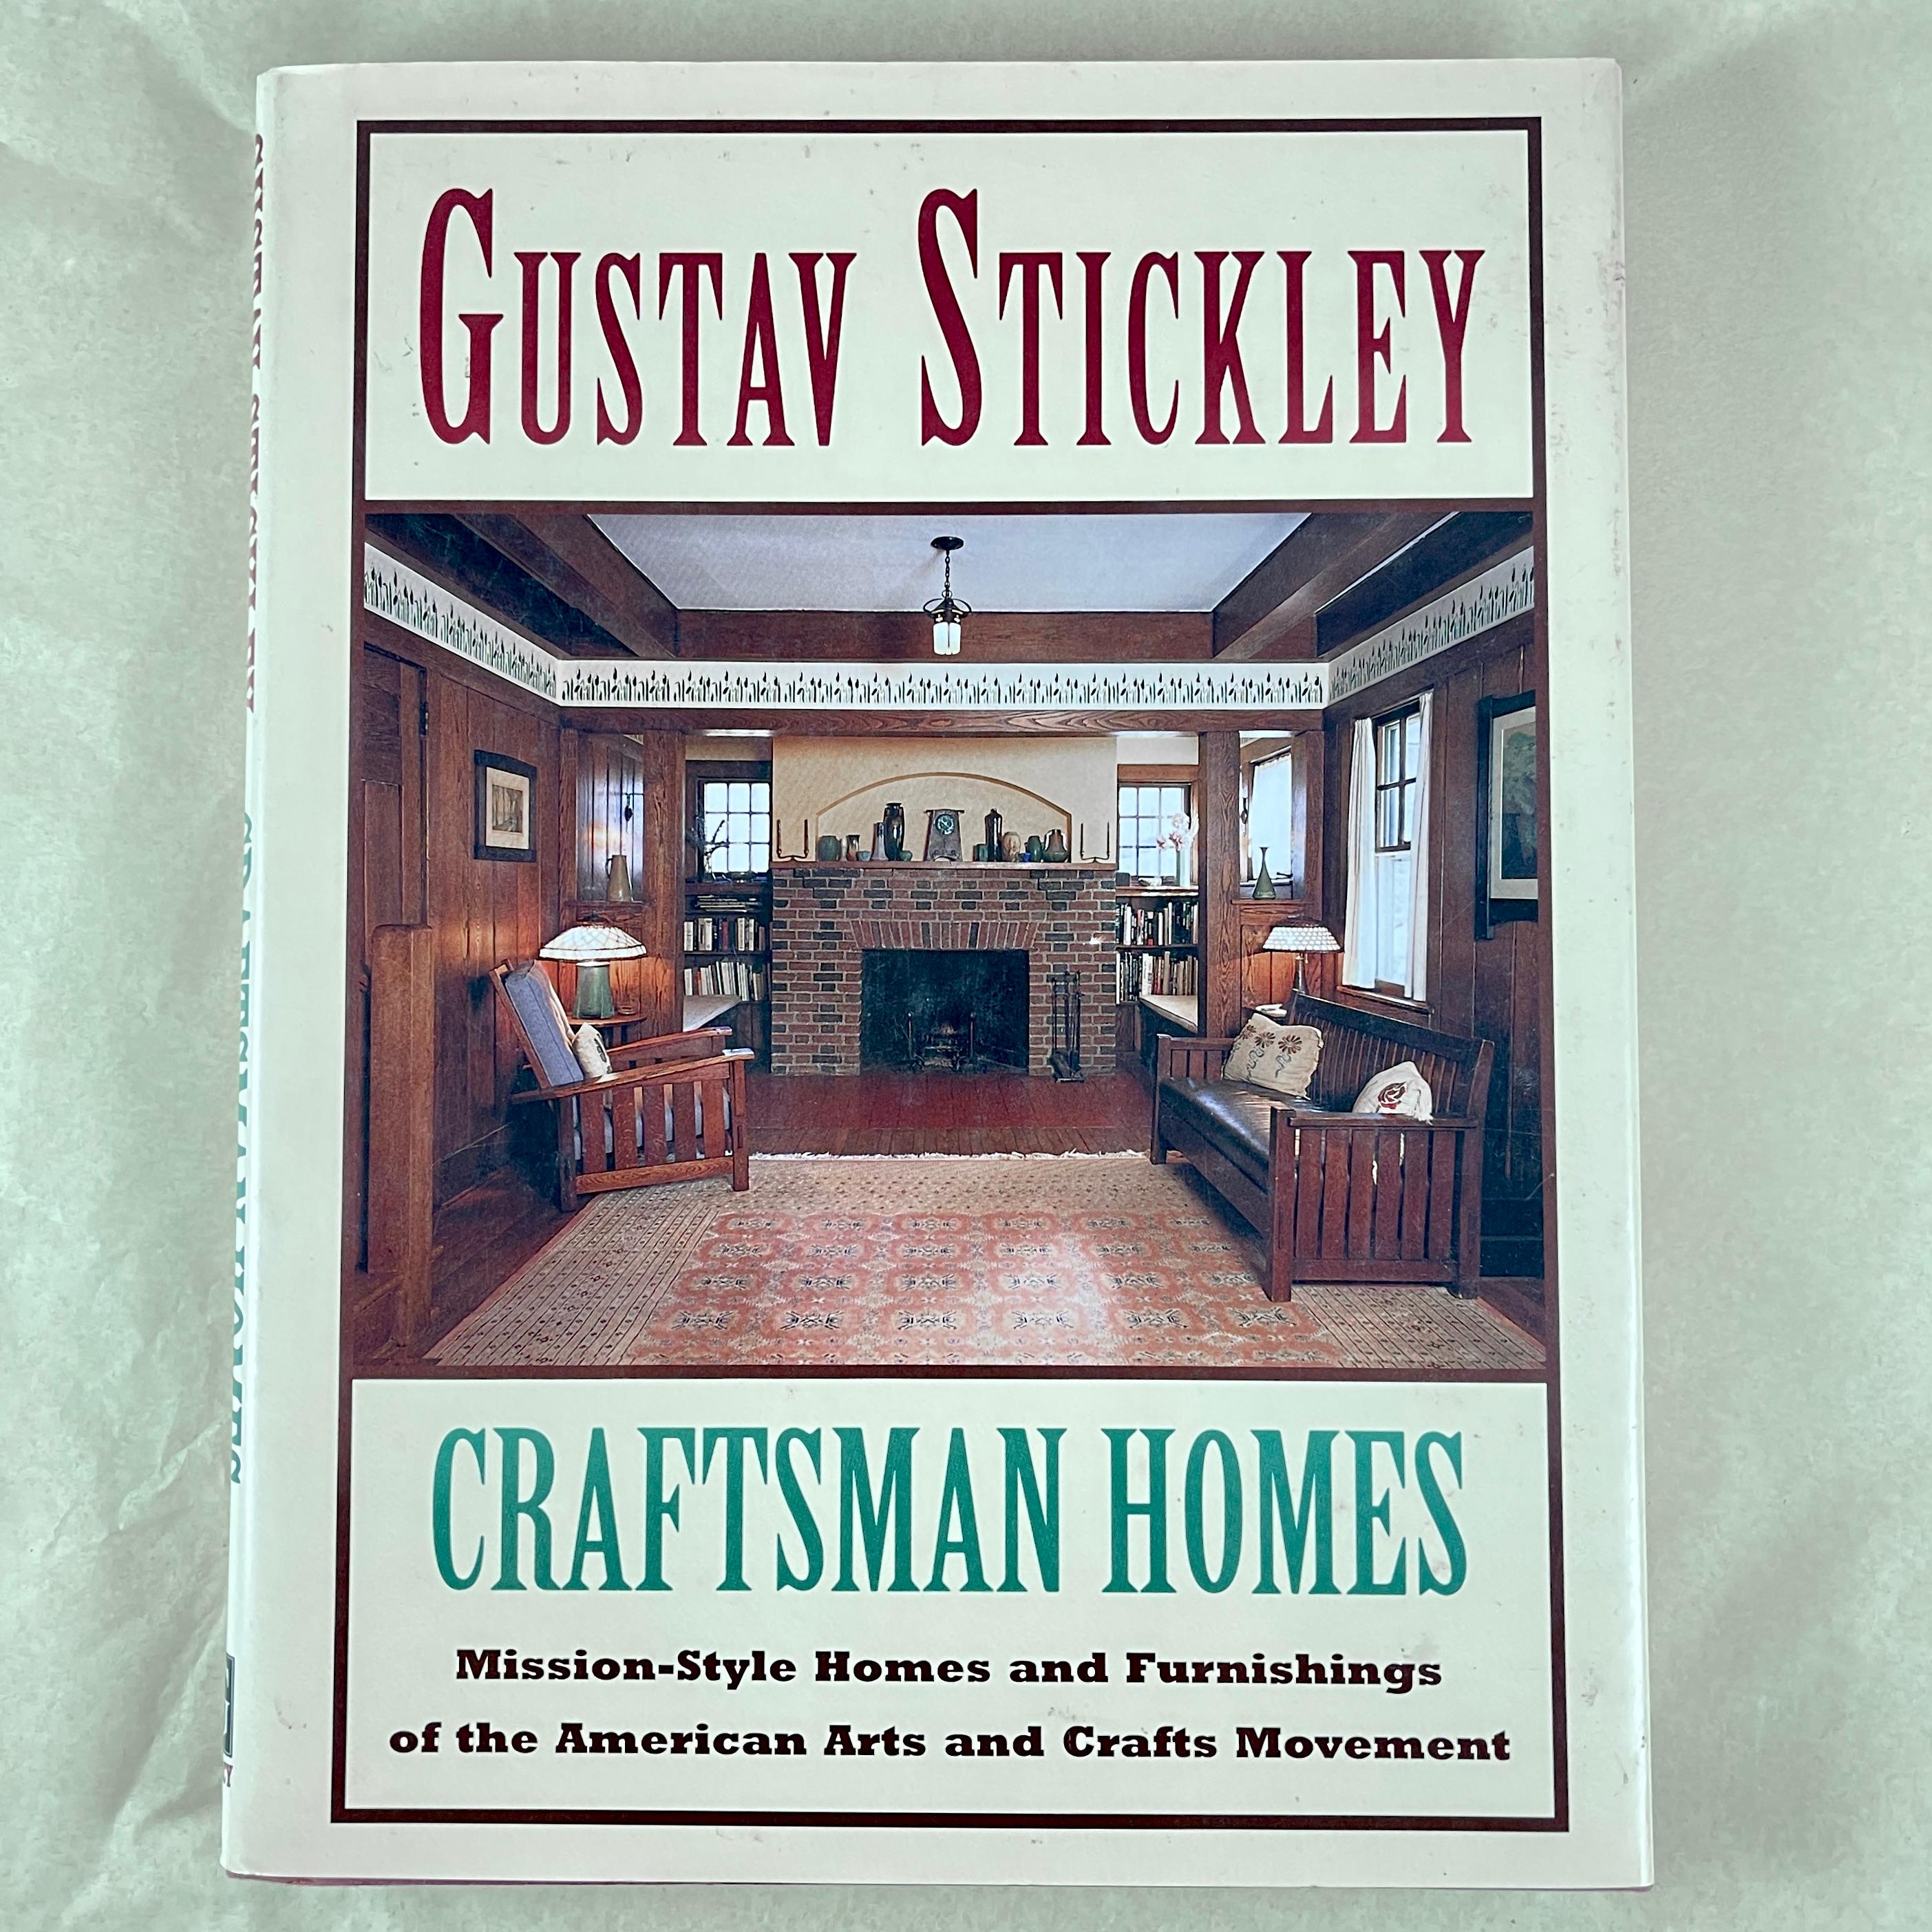 Gustav Stickley - Craftsman Homes, Gramercy, 1995.

Gustav Stickley (1858-1942) était un fabricant de meubles américain, un chef de file du design, un éditeur et une voix importante du mouvement américain Arts and Crafts.

La philosophie de Stickley